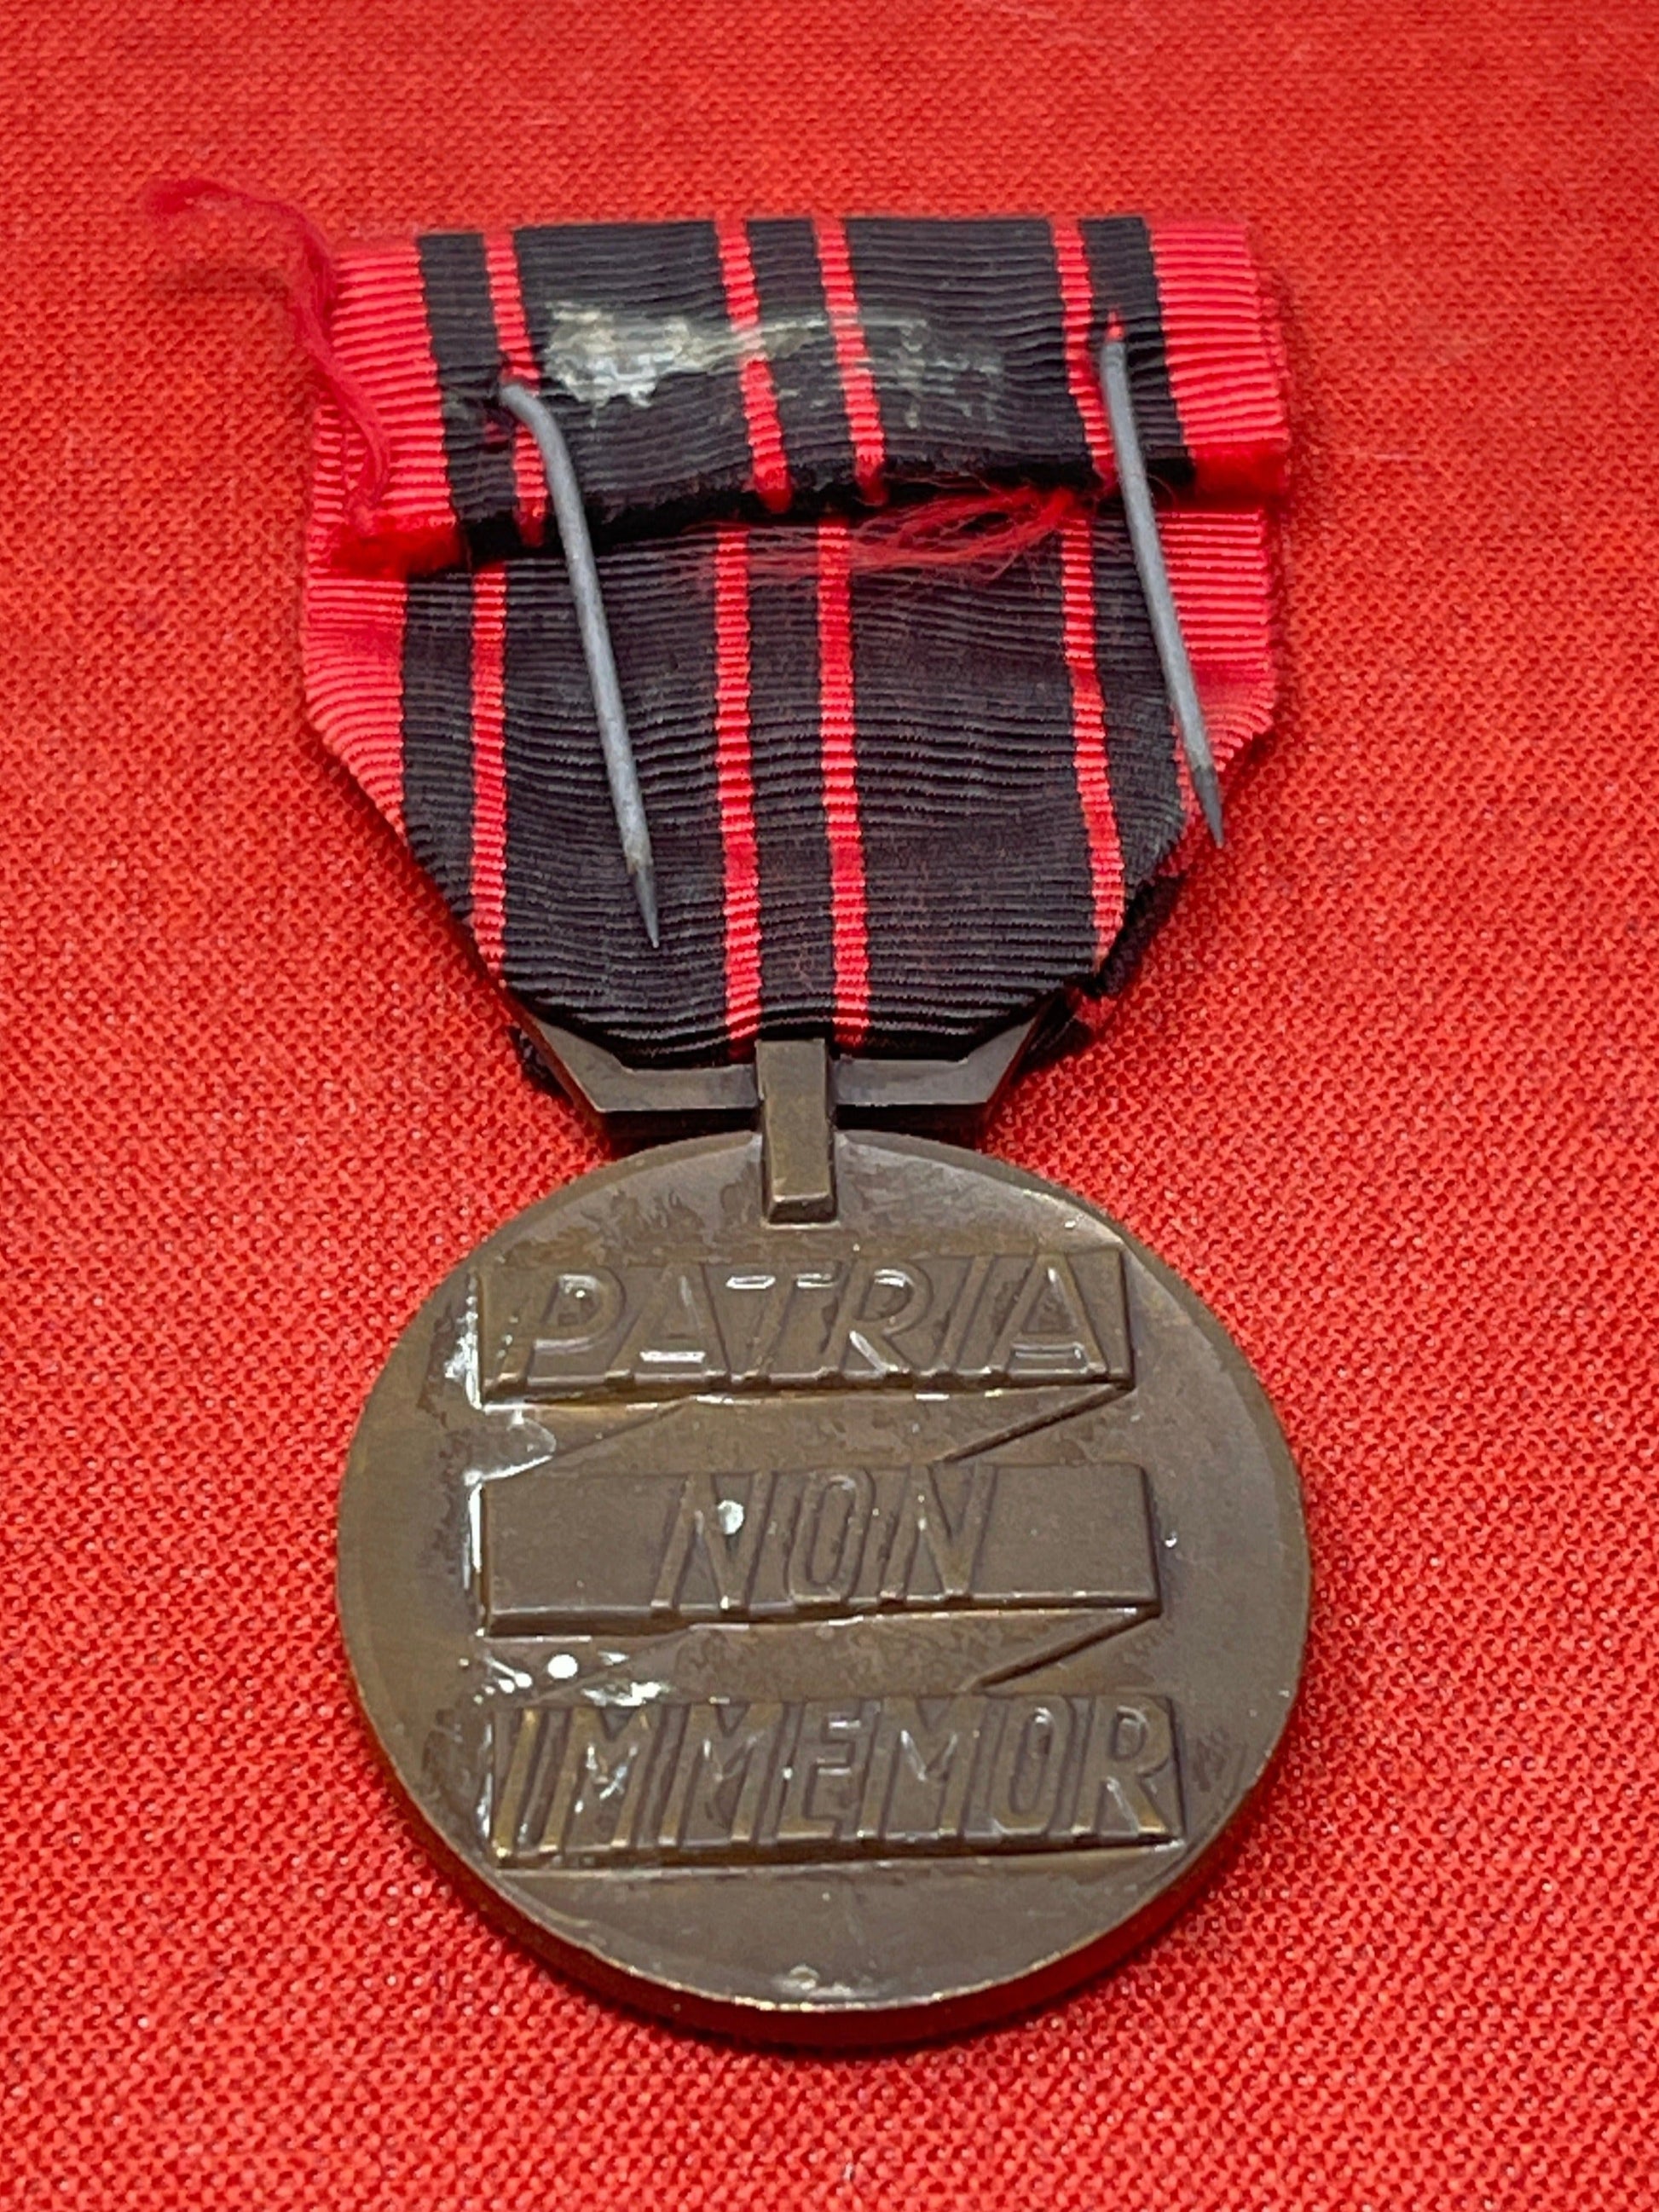 Medal of the Resistance (Médaille de la Résistance)